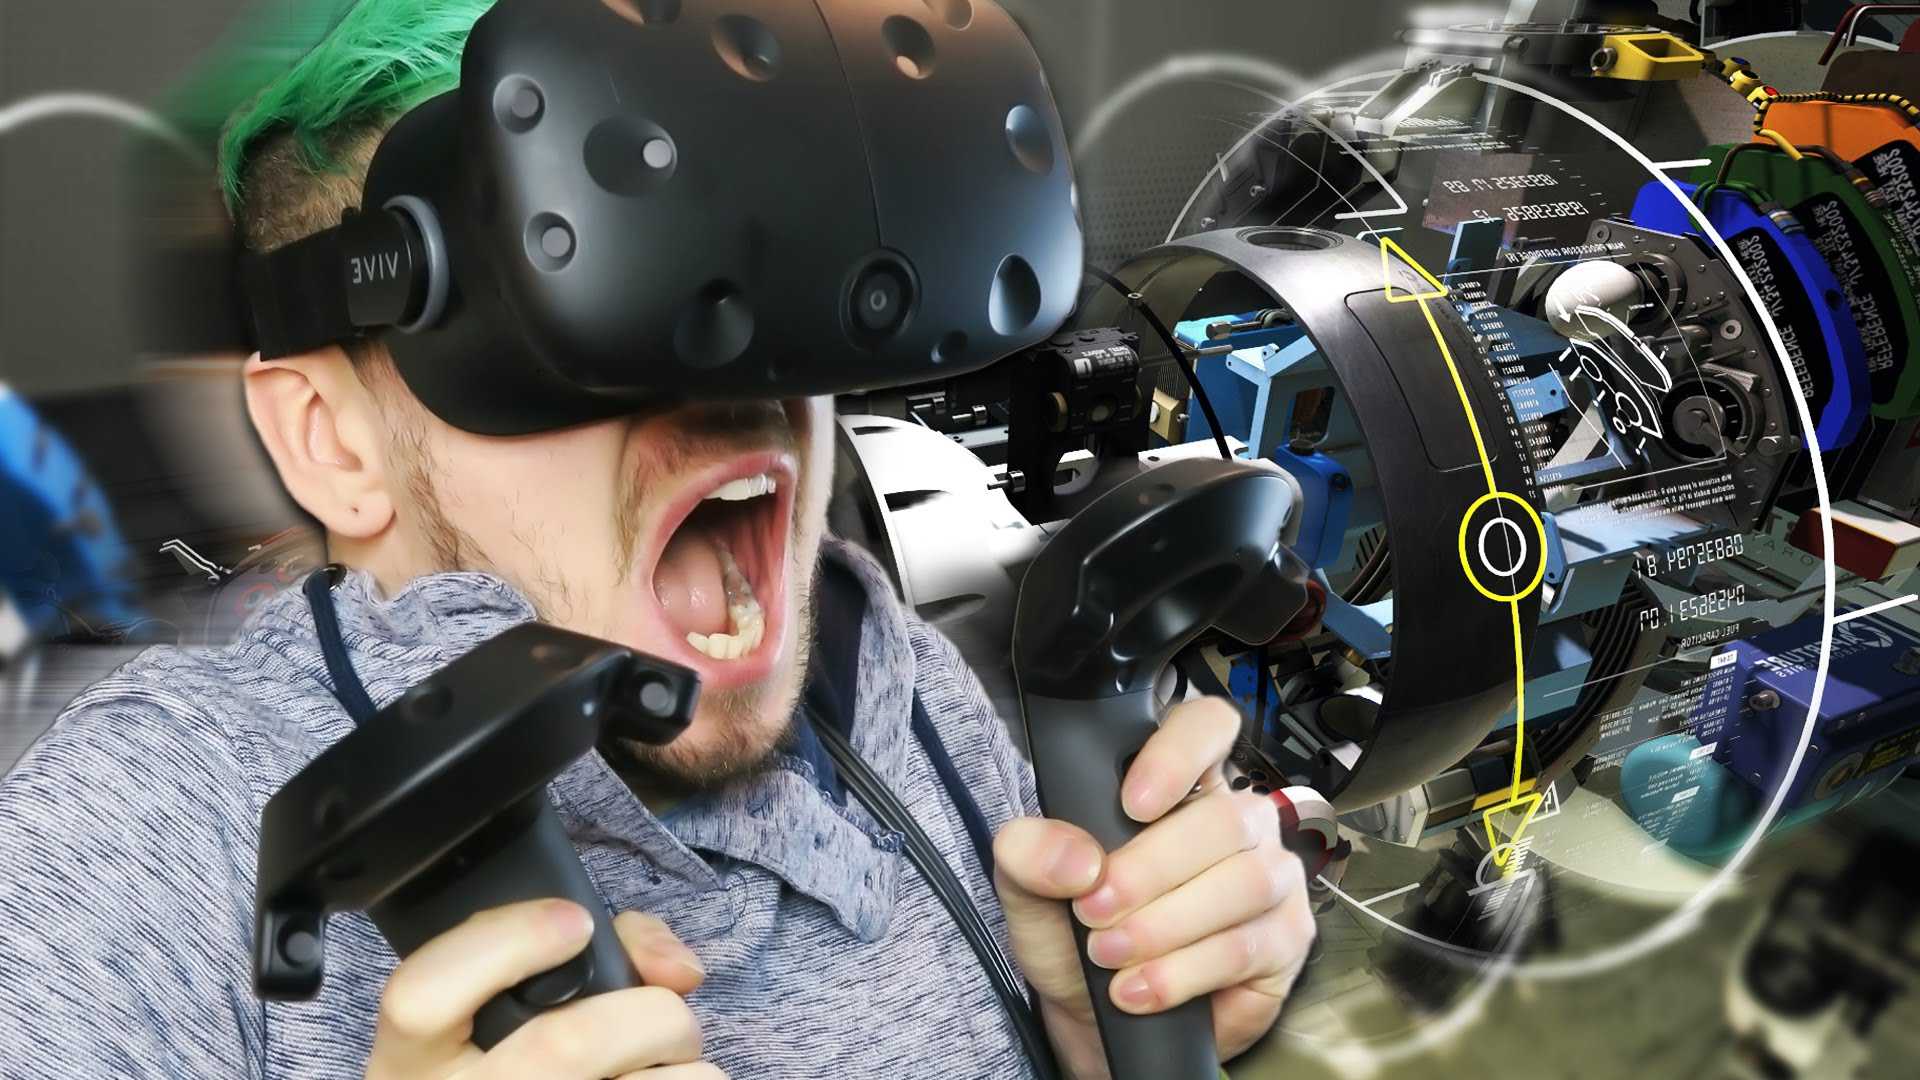 Виар видео страшное. Очки виртуальной реальности. Шлемы и очки виртуальной реальности. Очки для компьютерных игр. Человек в шлеме виртуальной реальности.